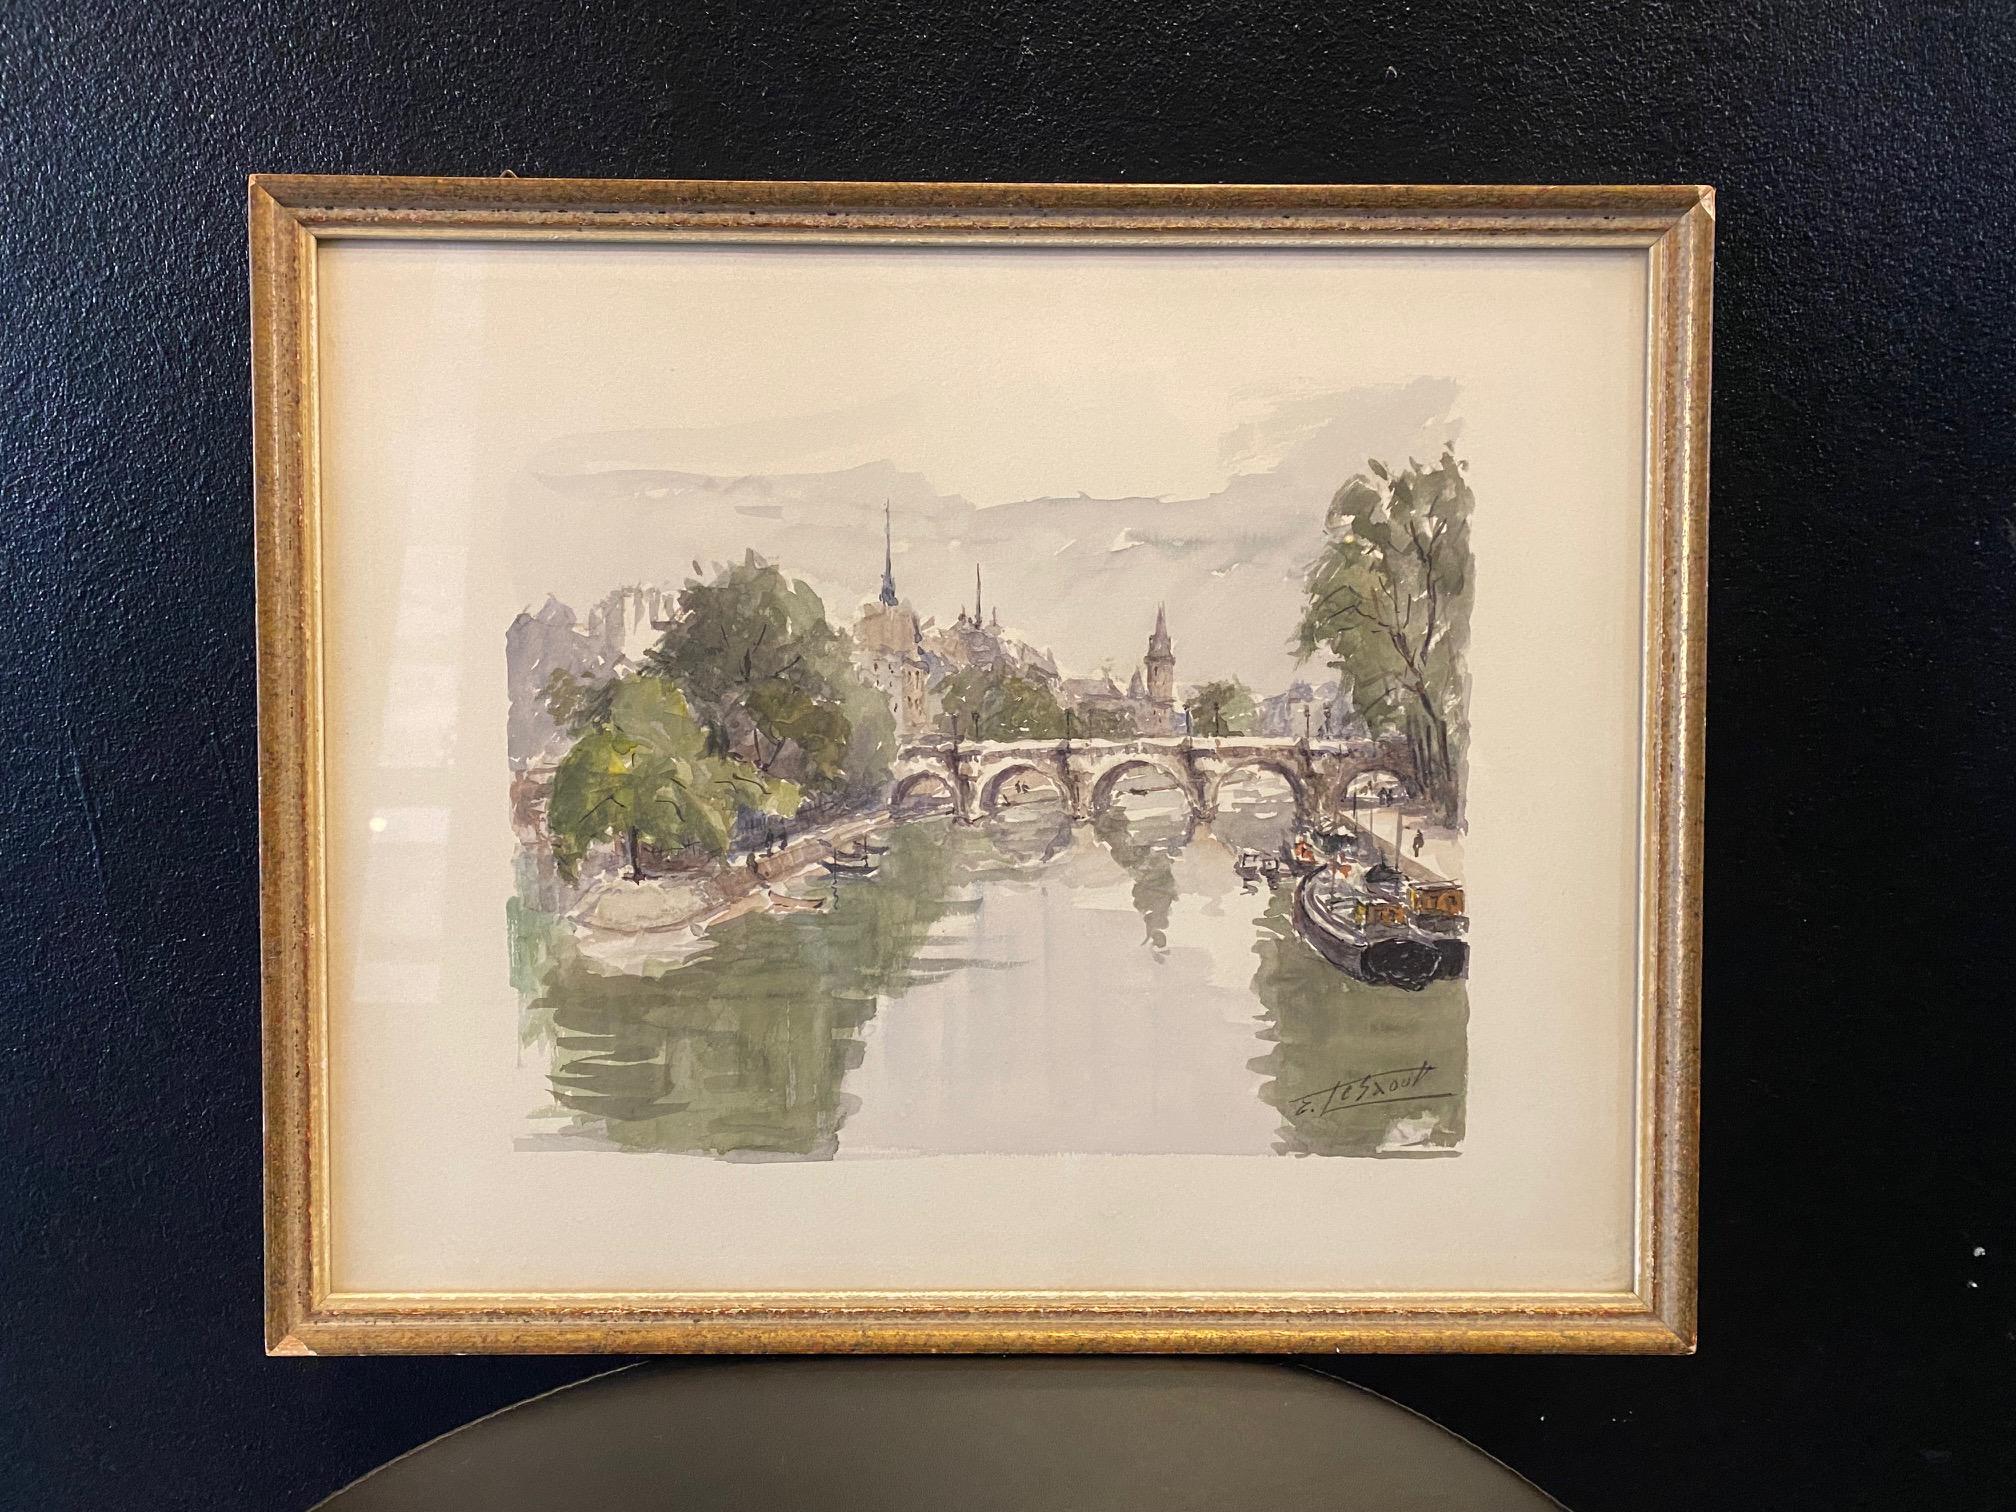 Paris Bridge, France by Emile Lesaout - Watercolor on paper 23x28 cm 4